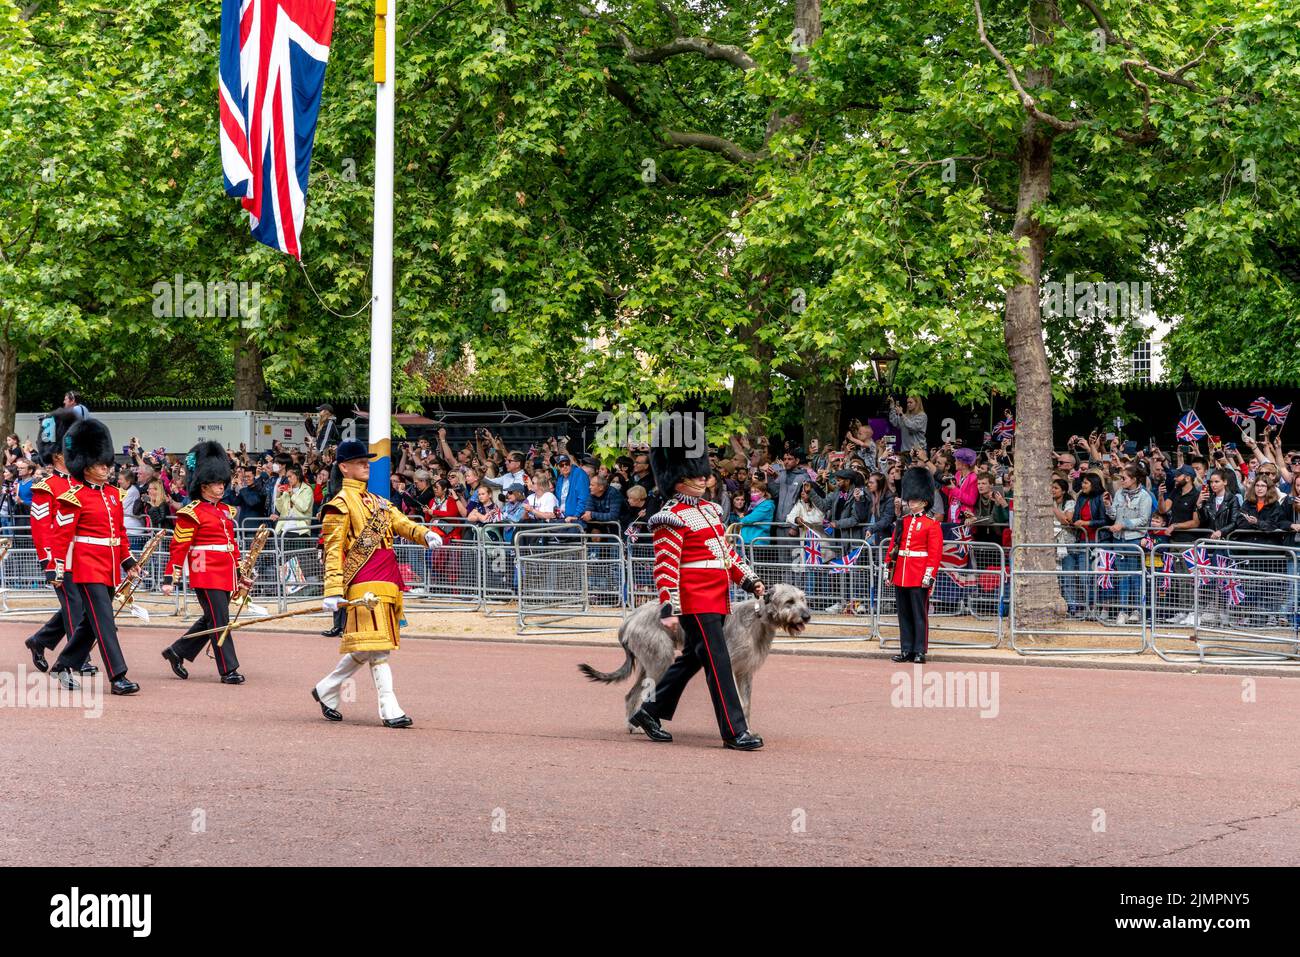 Les gardes irlandais du premier bataillon et la mascotte de leur chien de chasse irlandais « Seamus » prennent part à la parade de l'anniversaire de la reine, Londres, Royaume-Uni. Banque D'Images